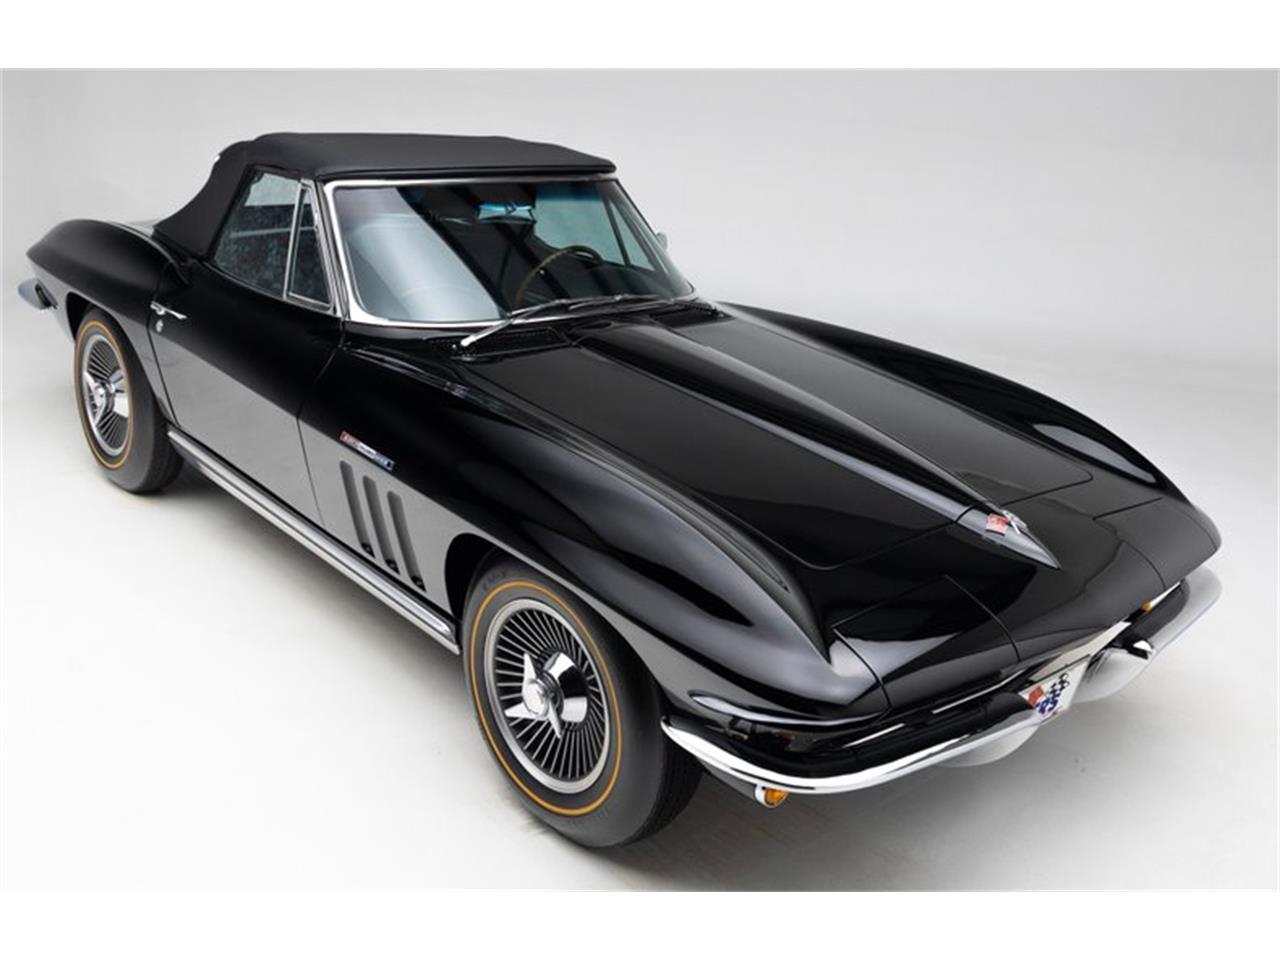 For Sale: 1965 Chevrolet Corvette in Clifton Park, New York for sale in Clifton Park, NY